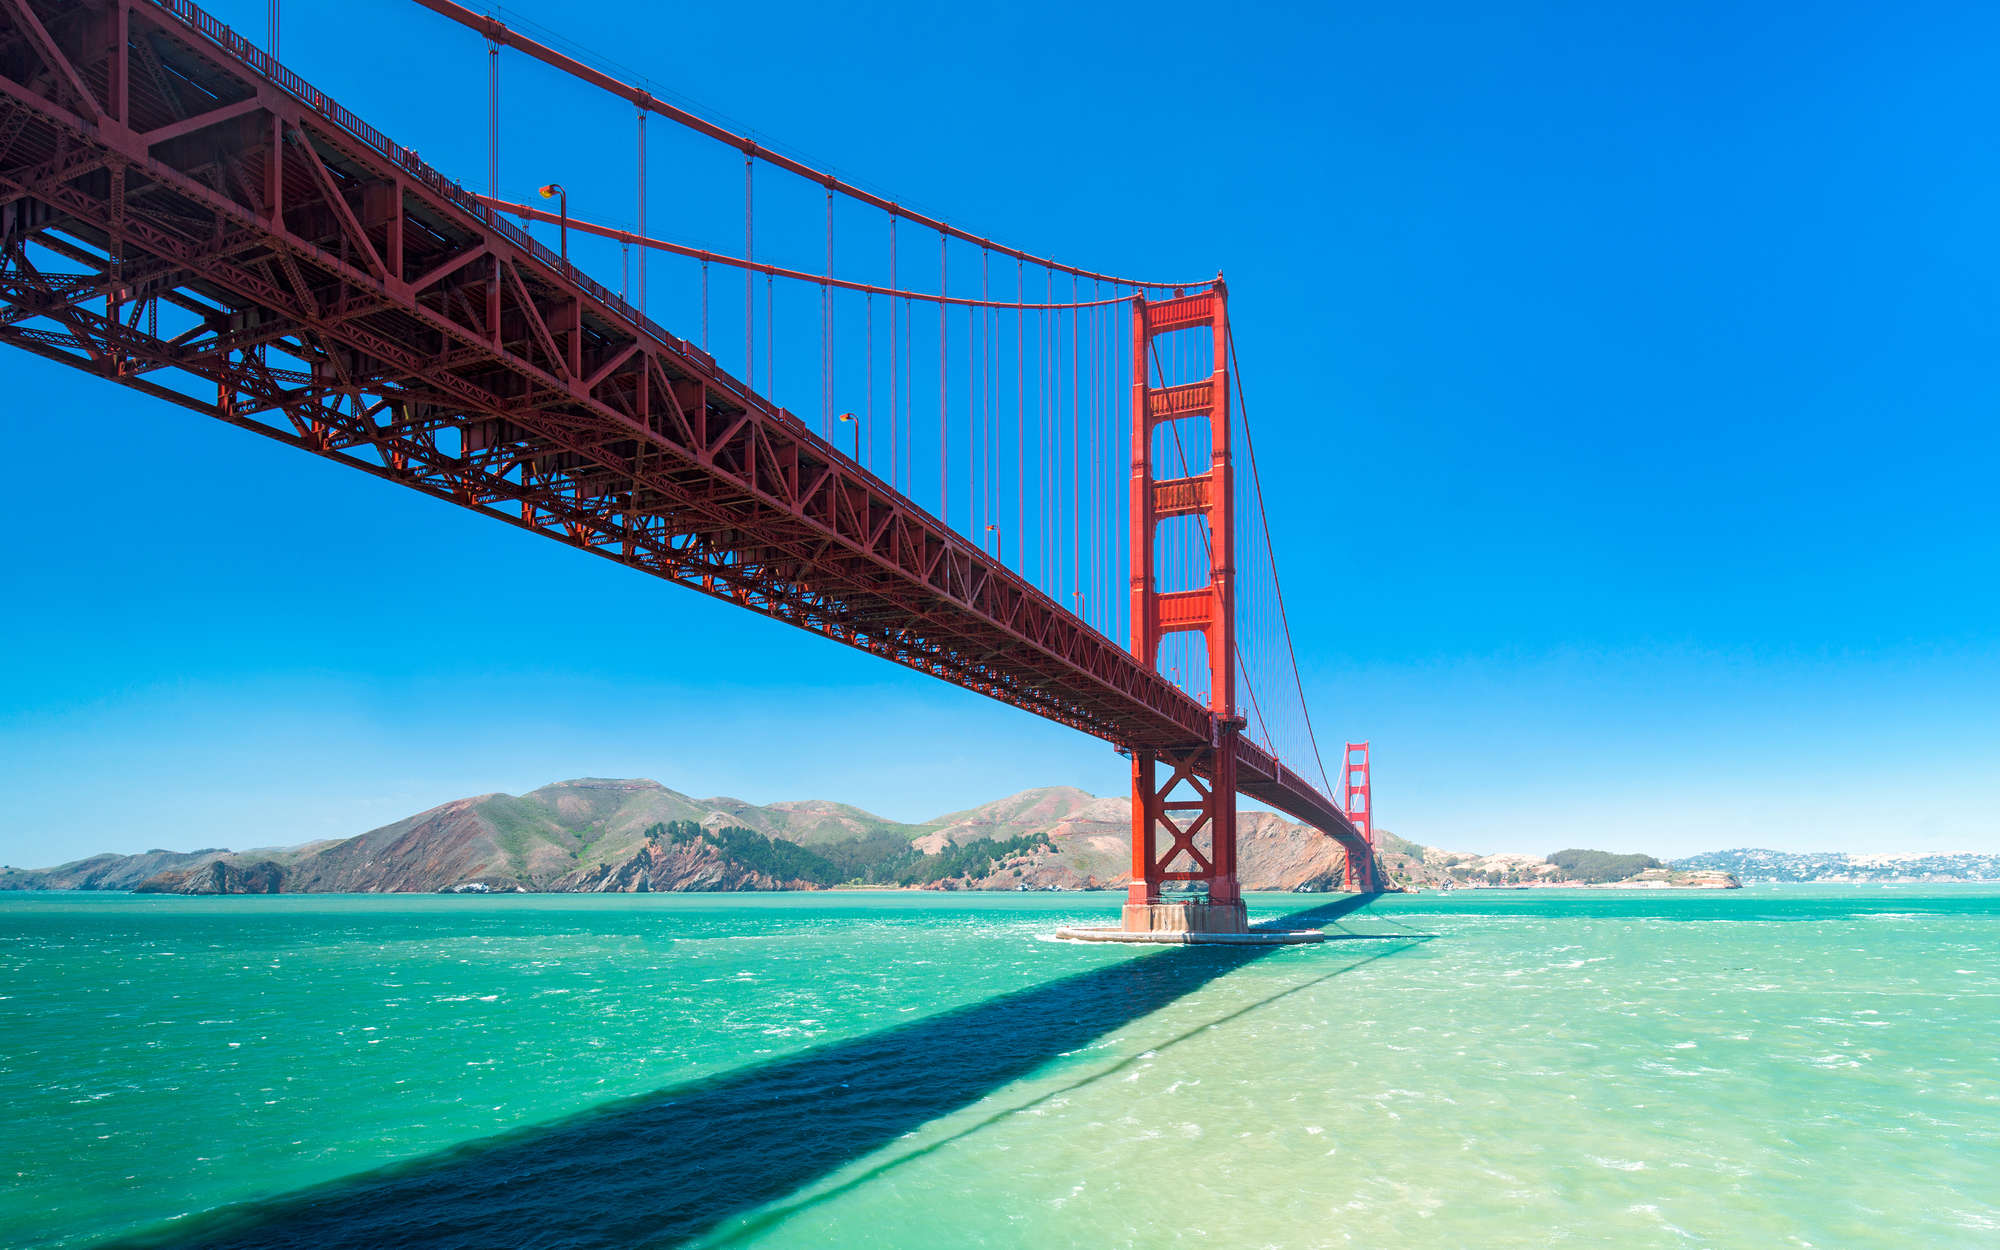             Fototapete Golden Gate Bridge in San Francisco – Premium Glattvlies
        